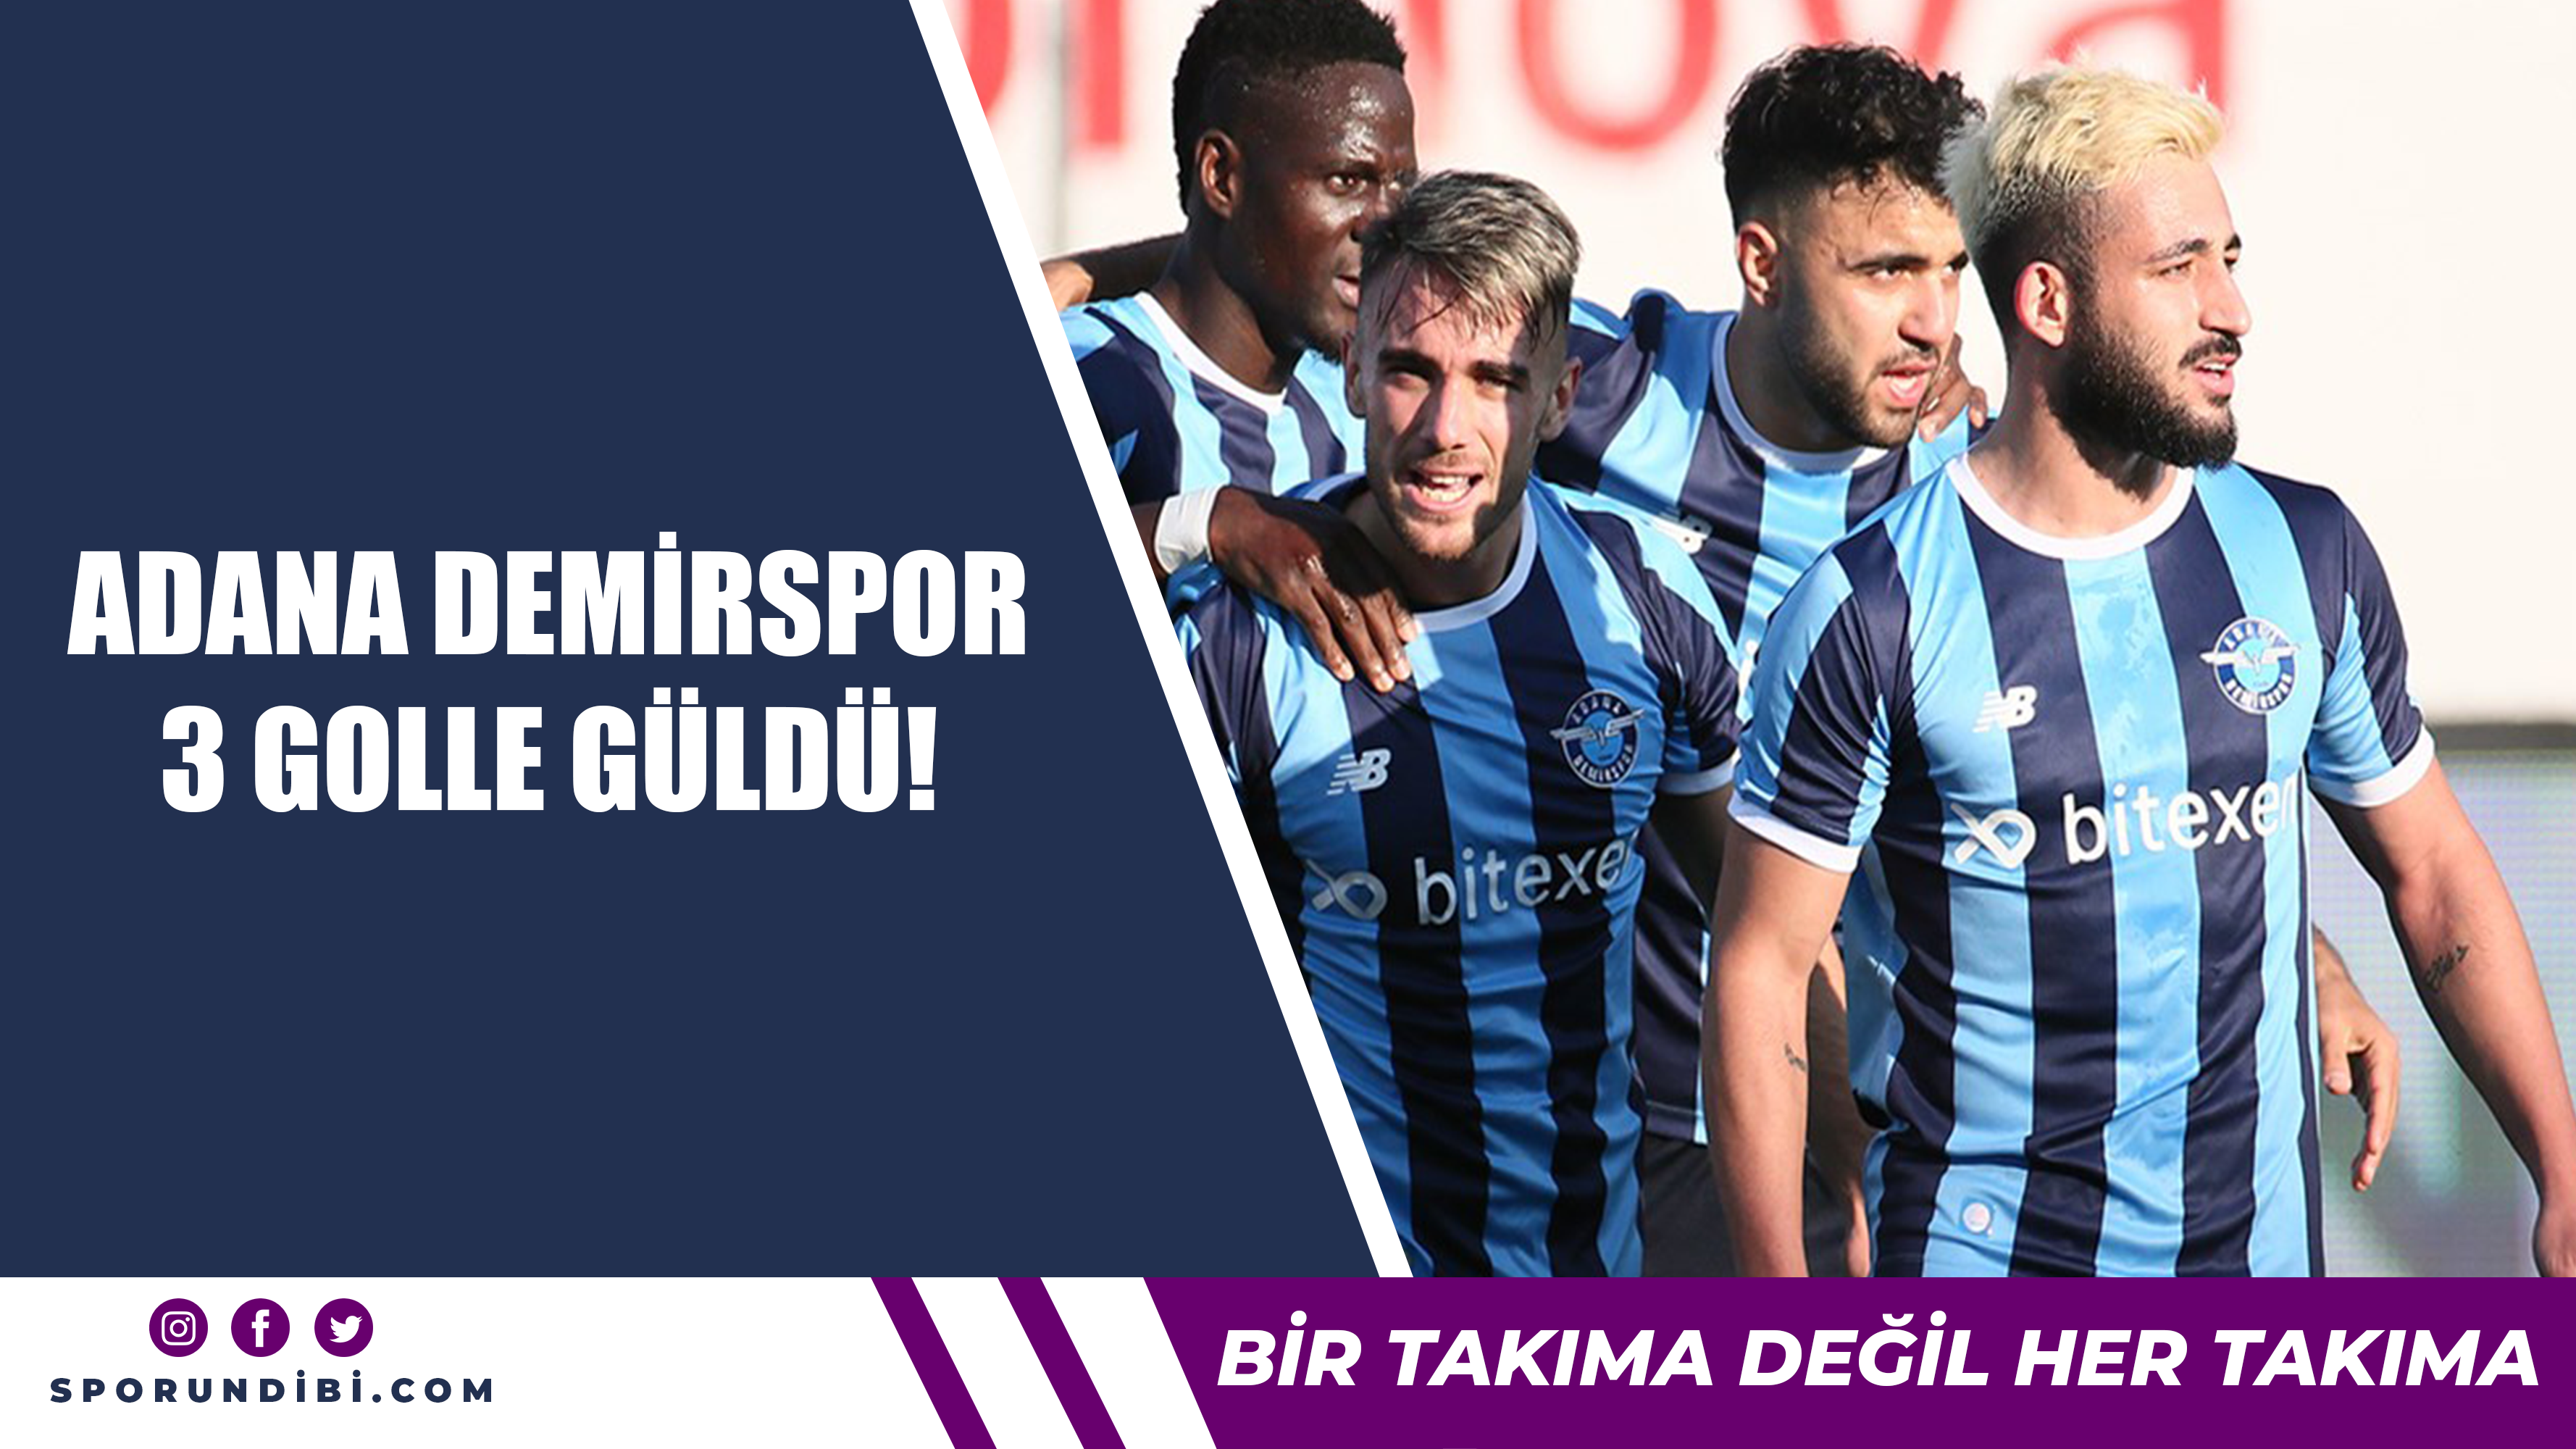 Adana Demirspor 3 golle güldü!